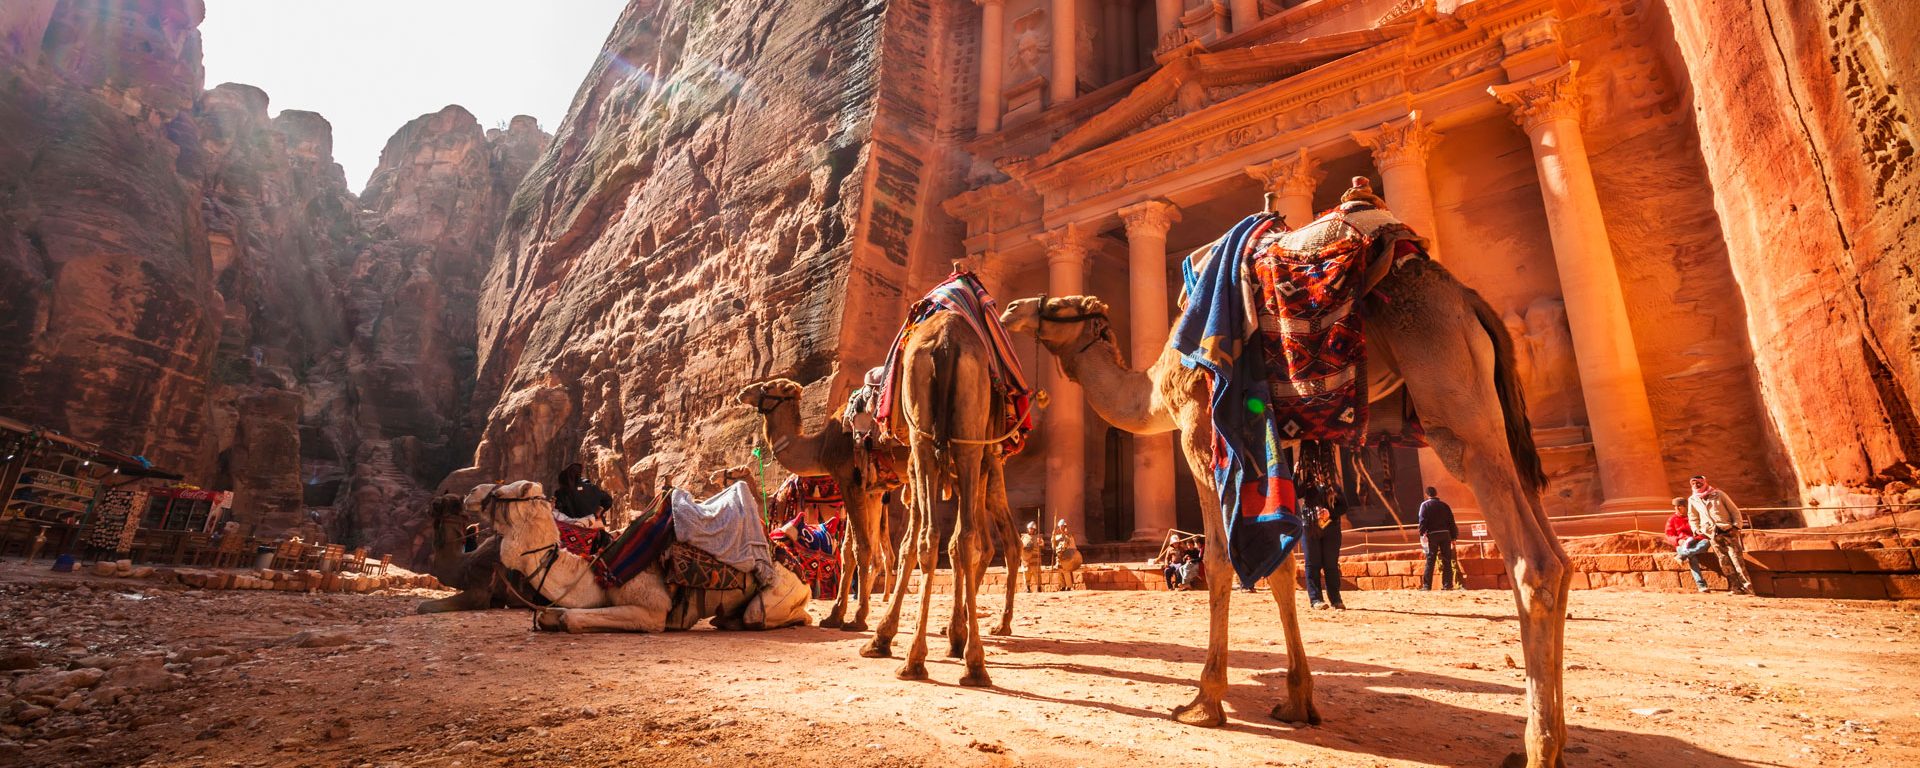 Camels in front of El Khazneh, Petra, Jordan